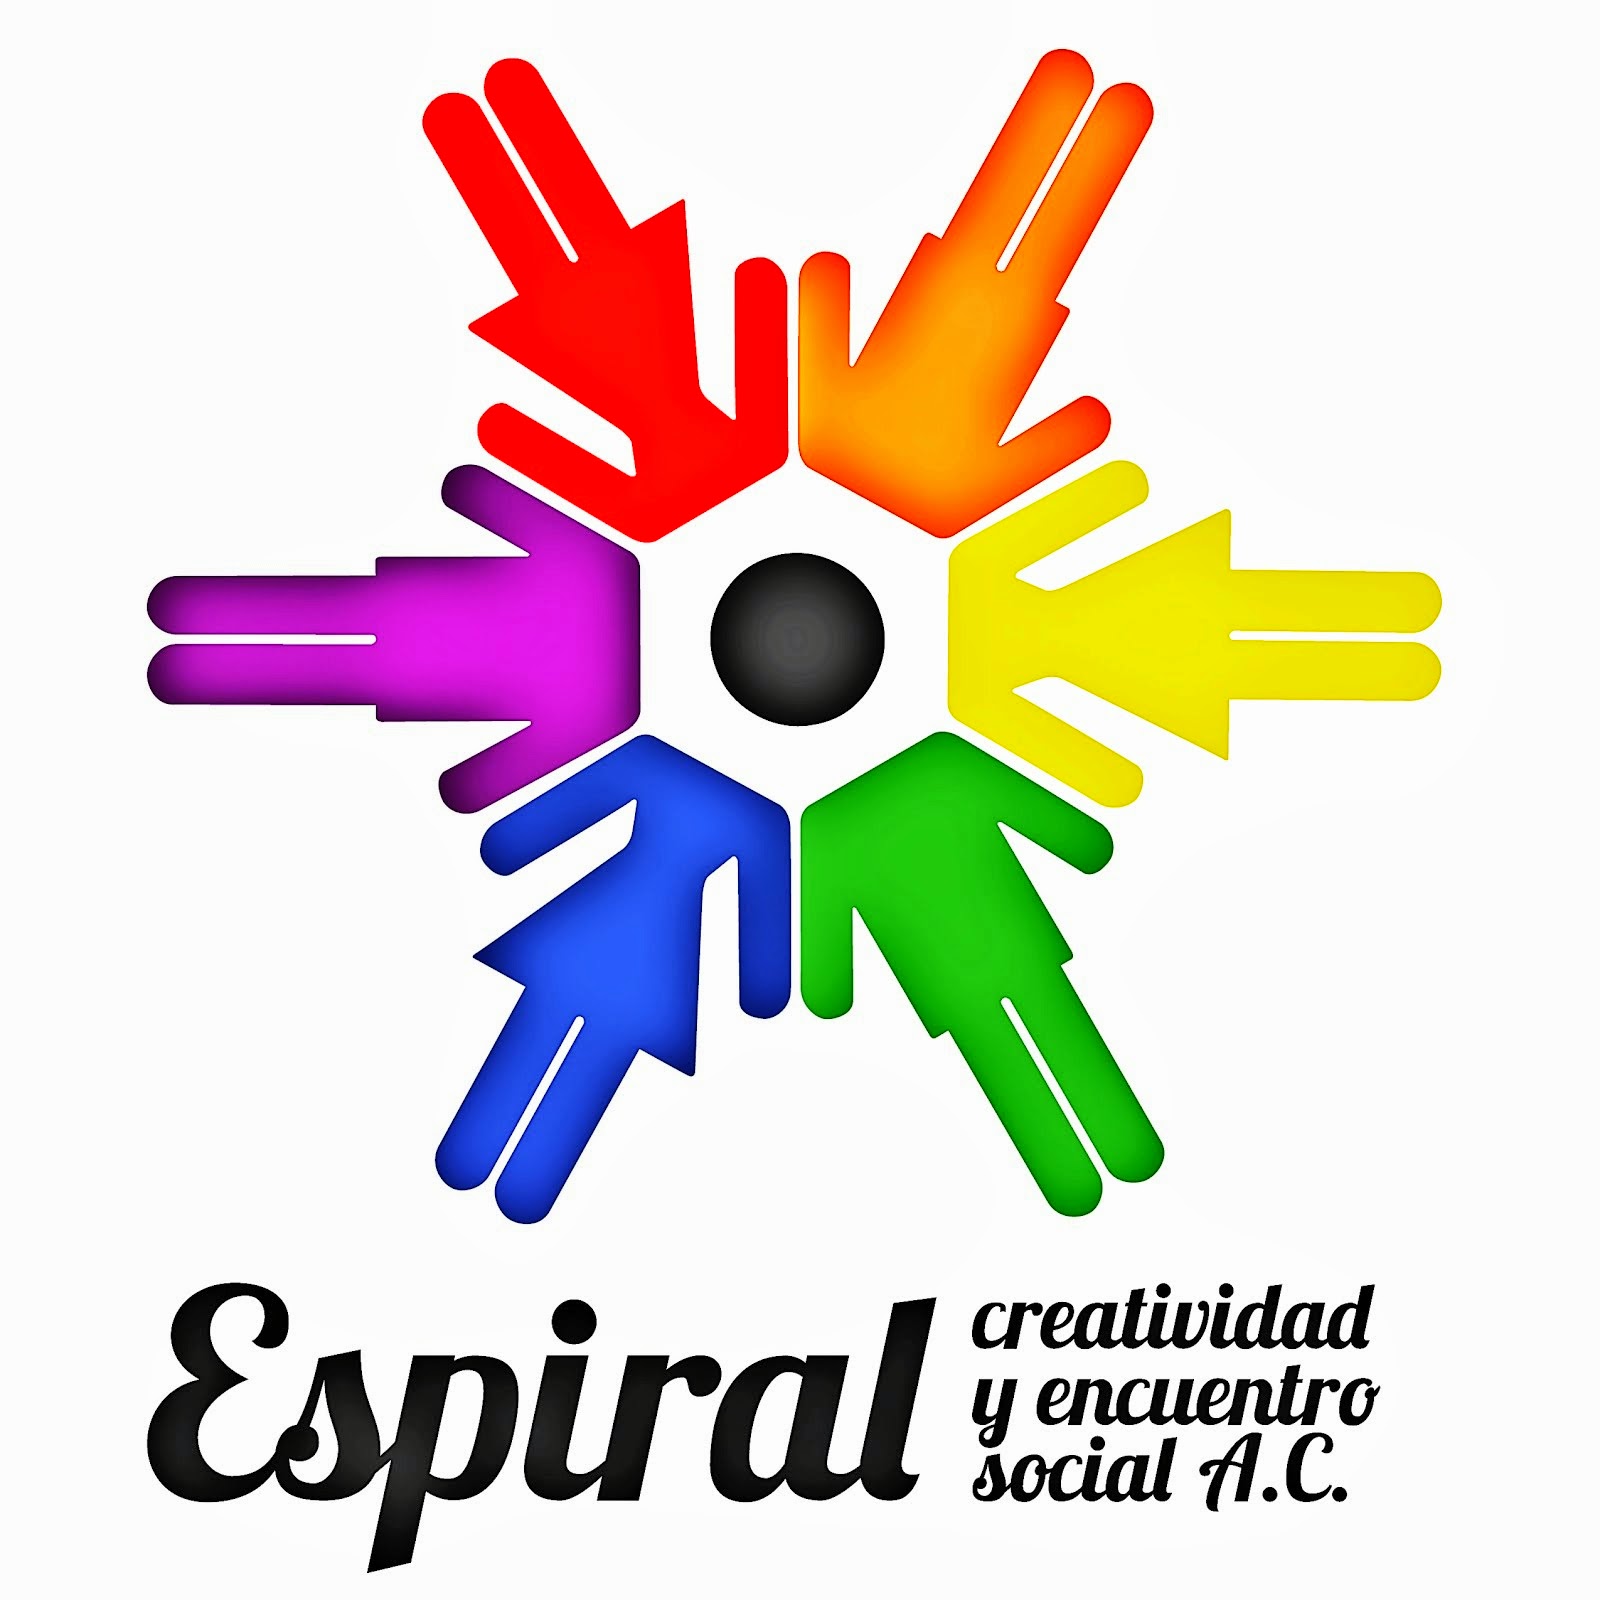 Espiral: Creatividad y encuentro social A.C.